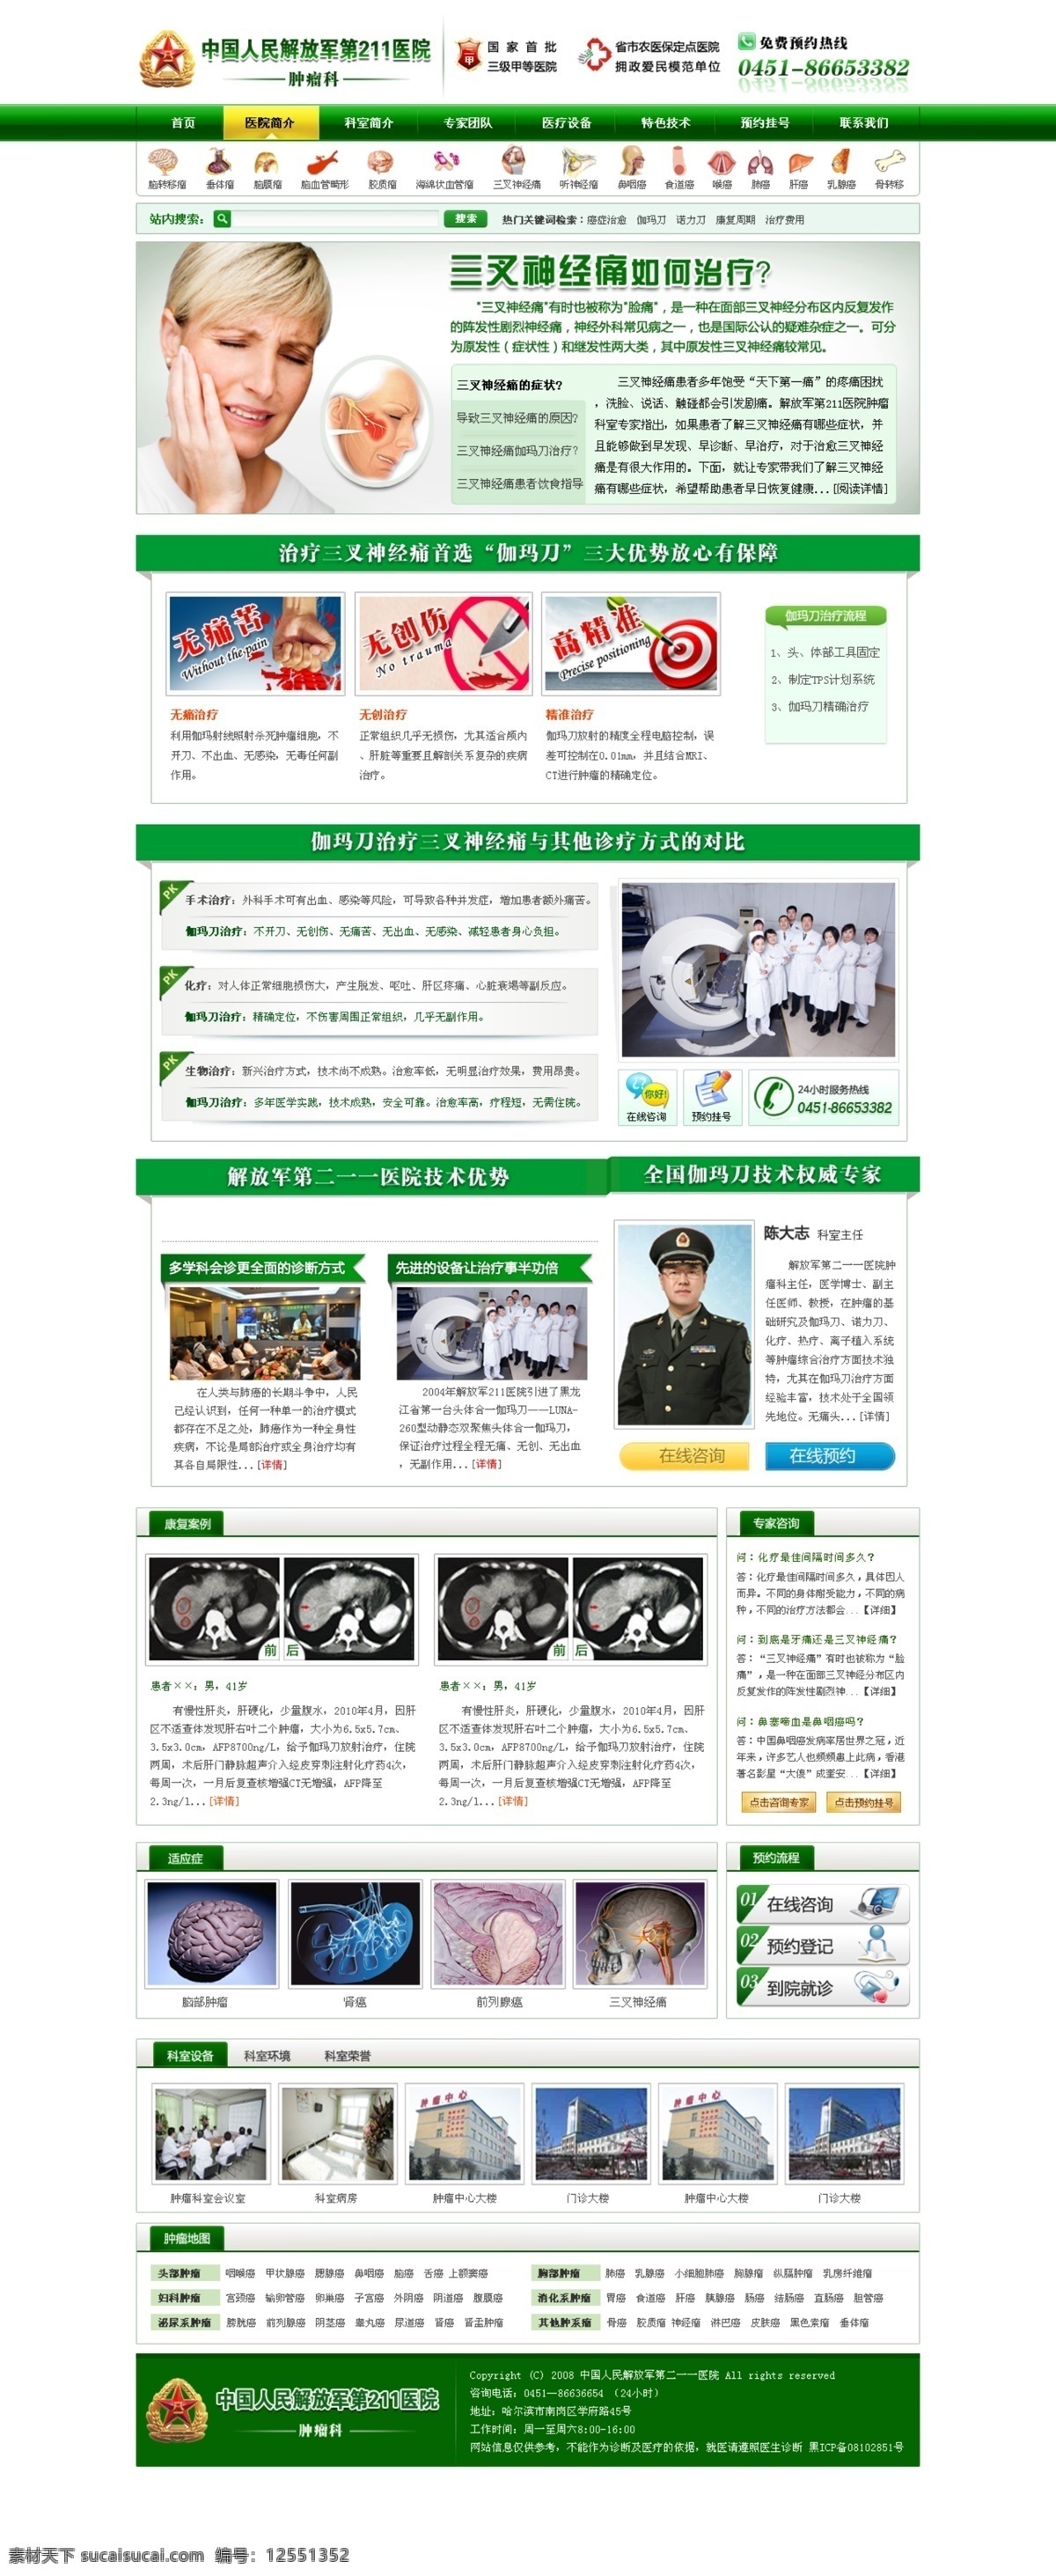 三叉神经痛 专题 医疗 医院 网站 疾病 三叉神经 中文模板 网页模板 源文件